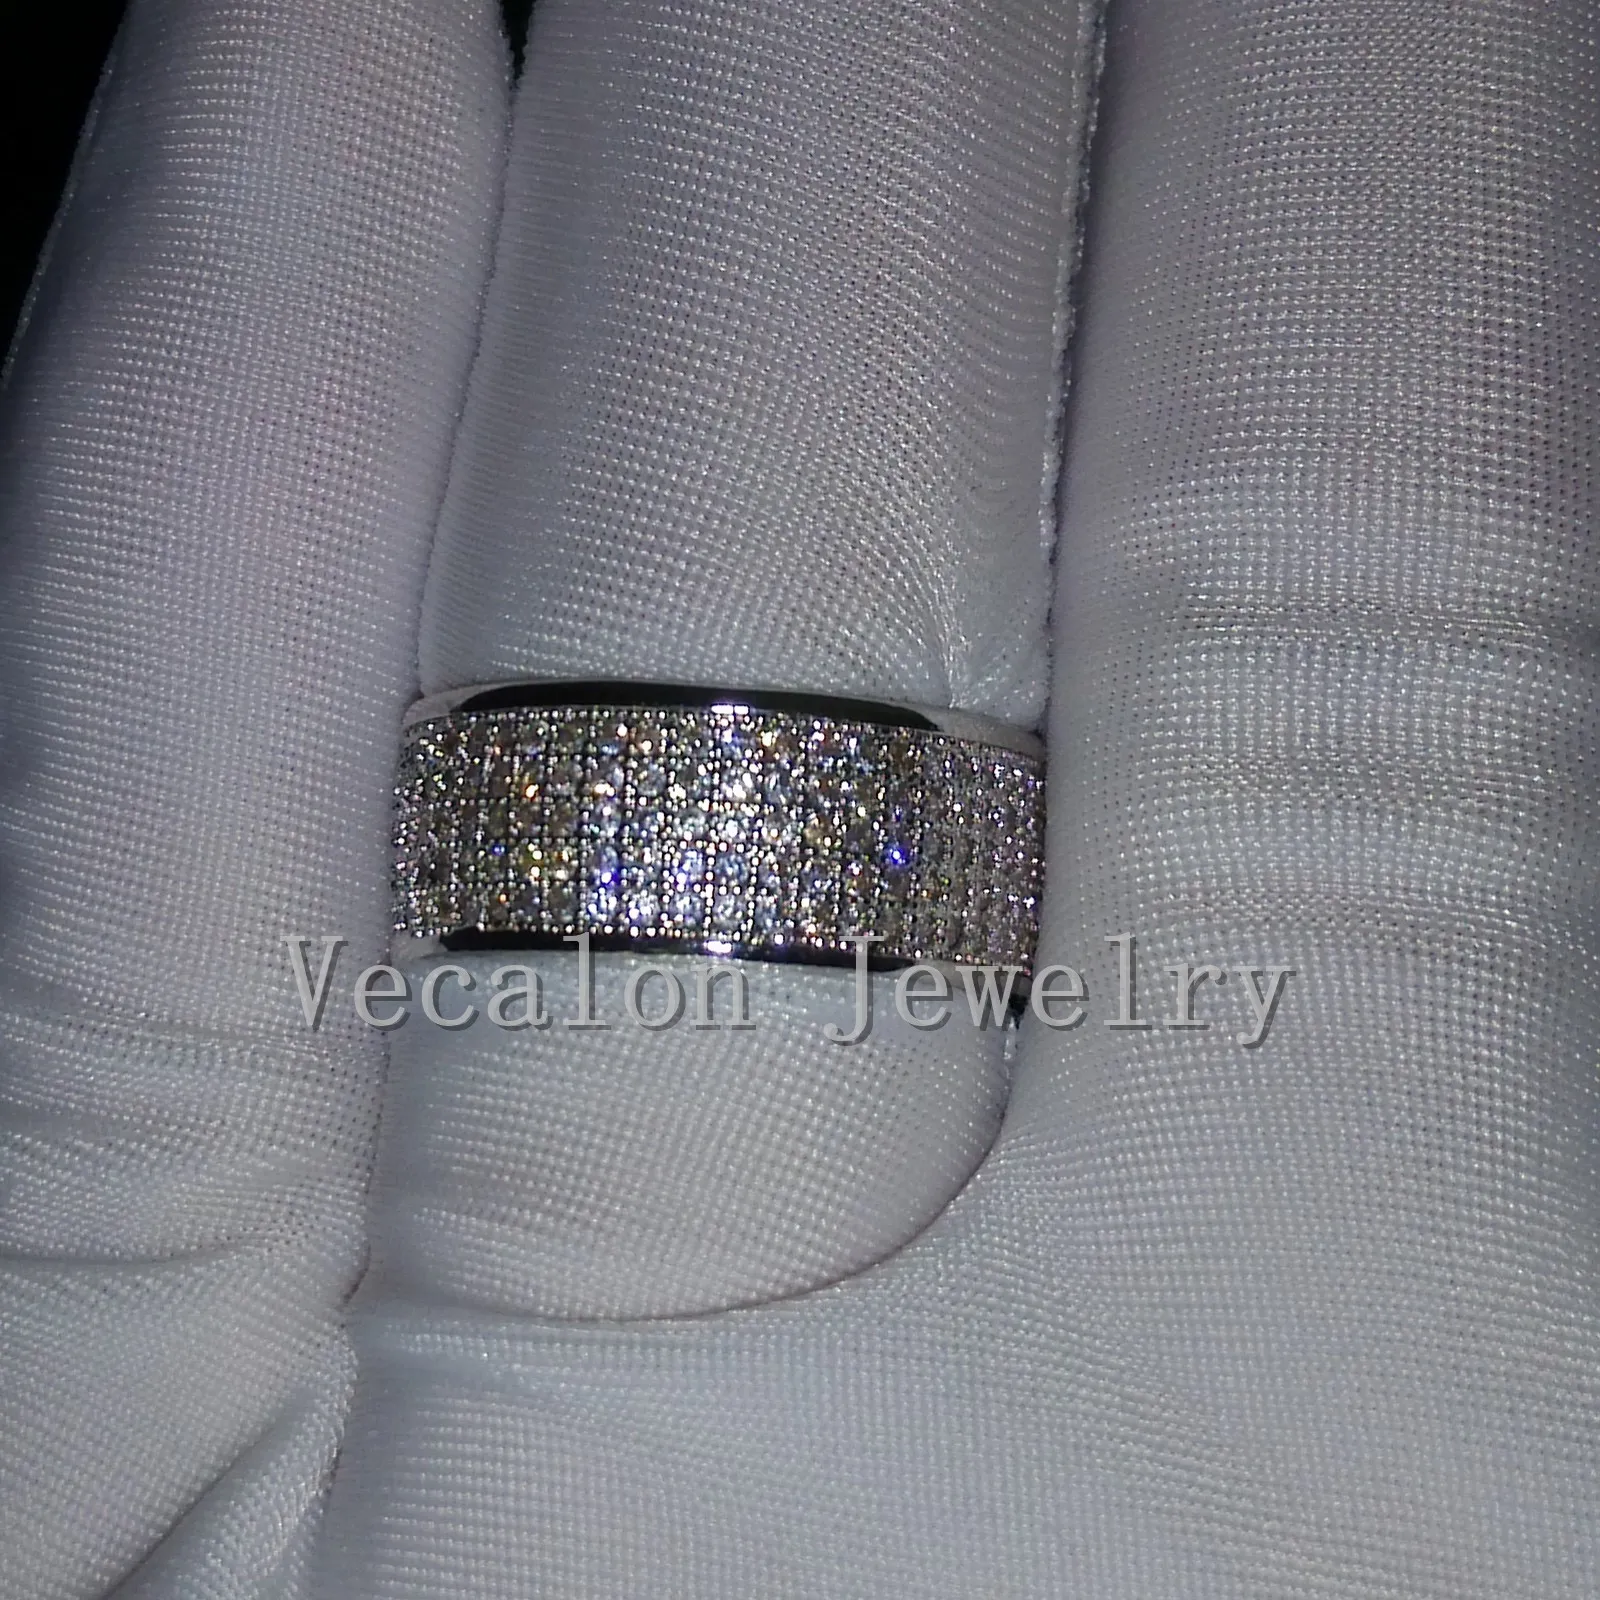 Vecalon volle 250 stücke simulierte diamant cz hochzeitsband ring für frauen 10kt weiß gold gefüllt weibliche verlobungsband sz 5-11